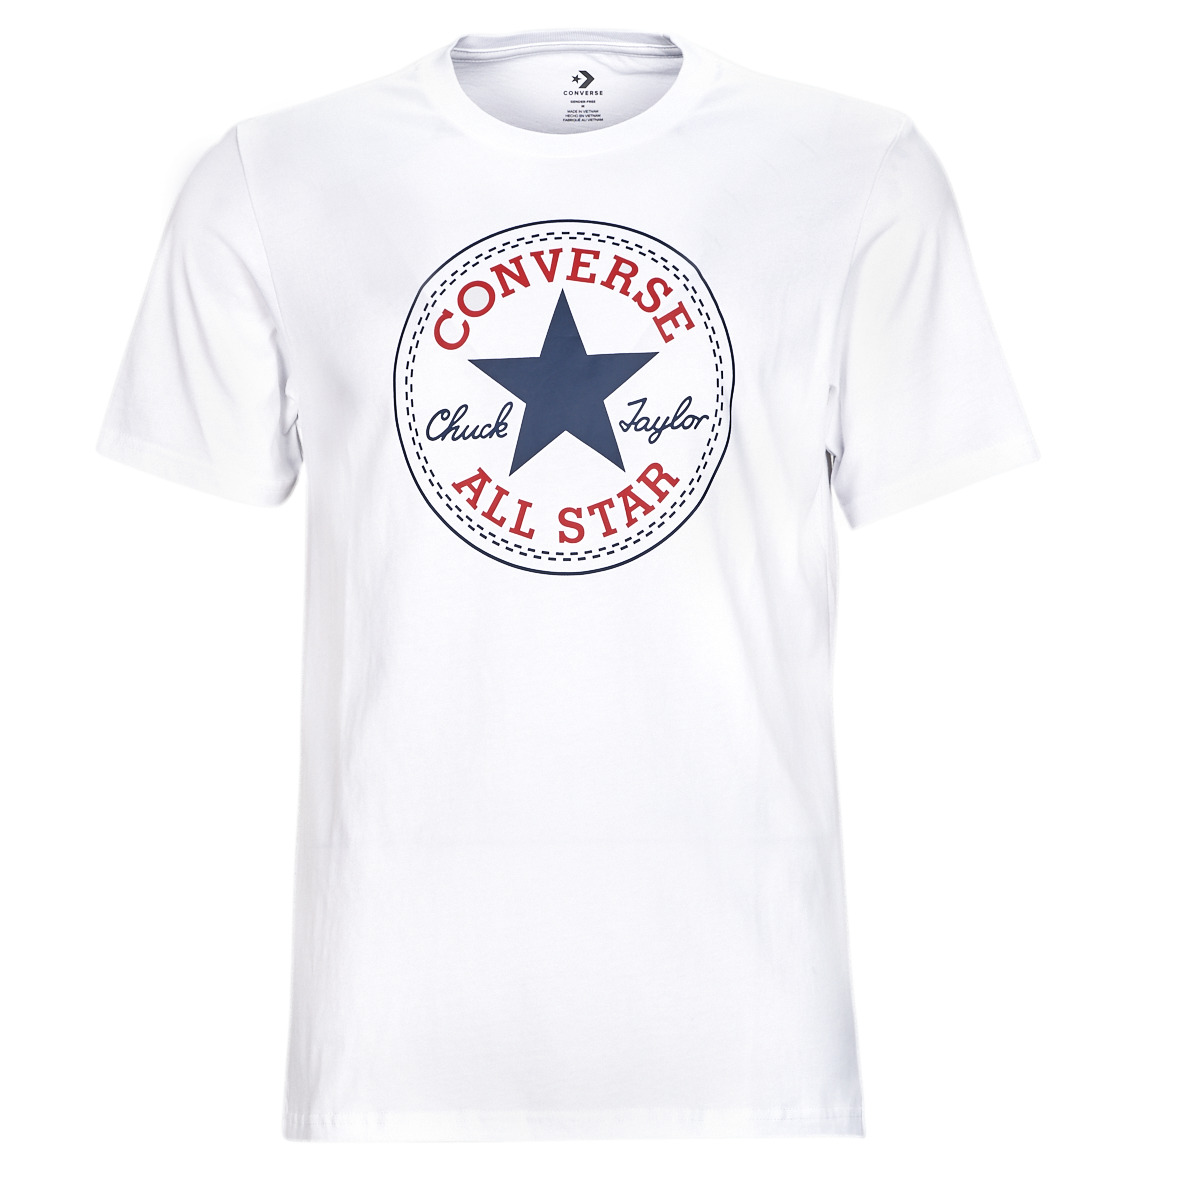 Oblečenie Tričká s krátkym rukávom Converse GO-TO CHUCK TAYLOR CLASSIC PATCH TEE Biela